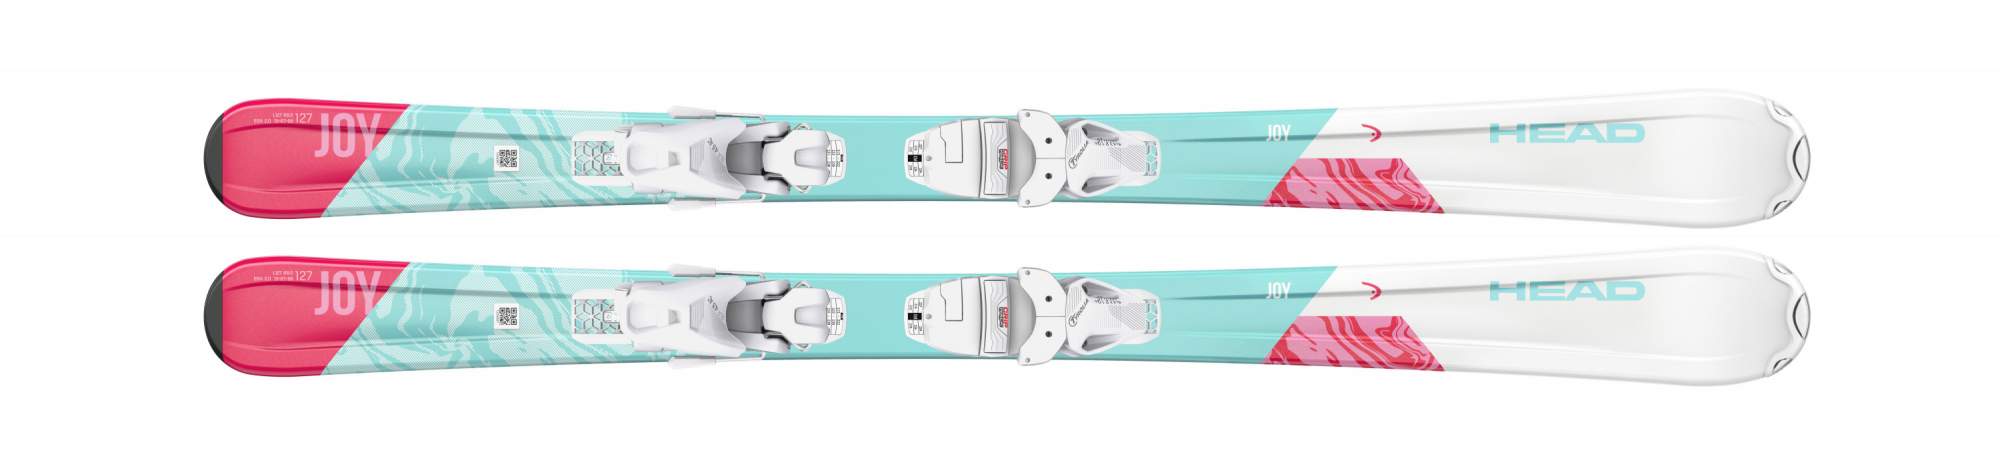 Горные лыжи Head Joy SLR Pro + SLR 4.5 2021 Mint/white, 117 см